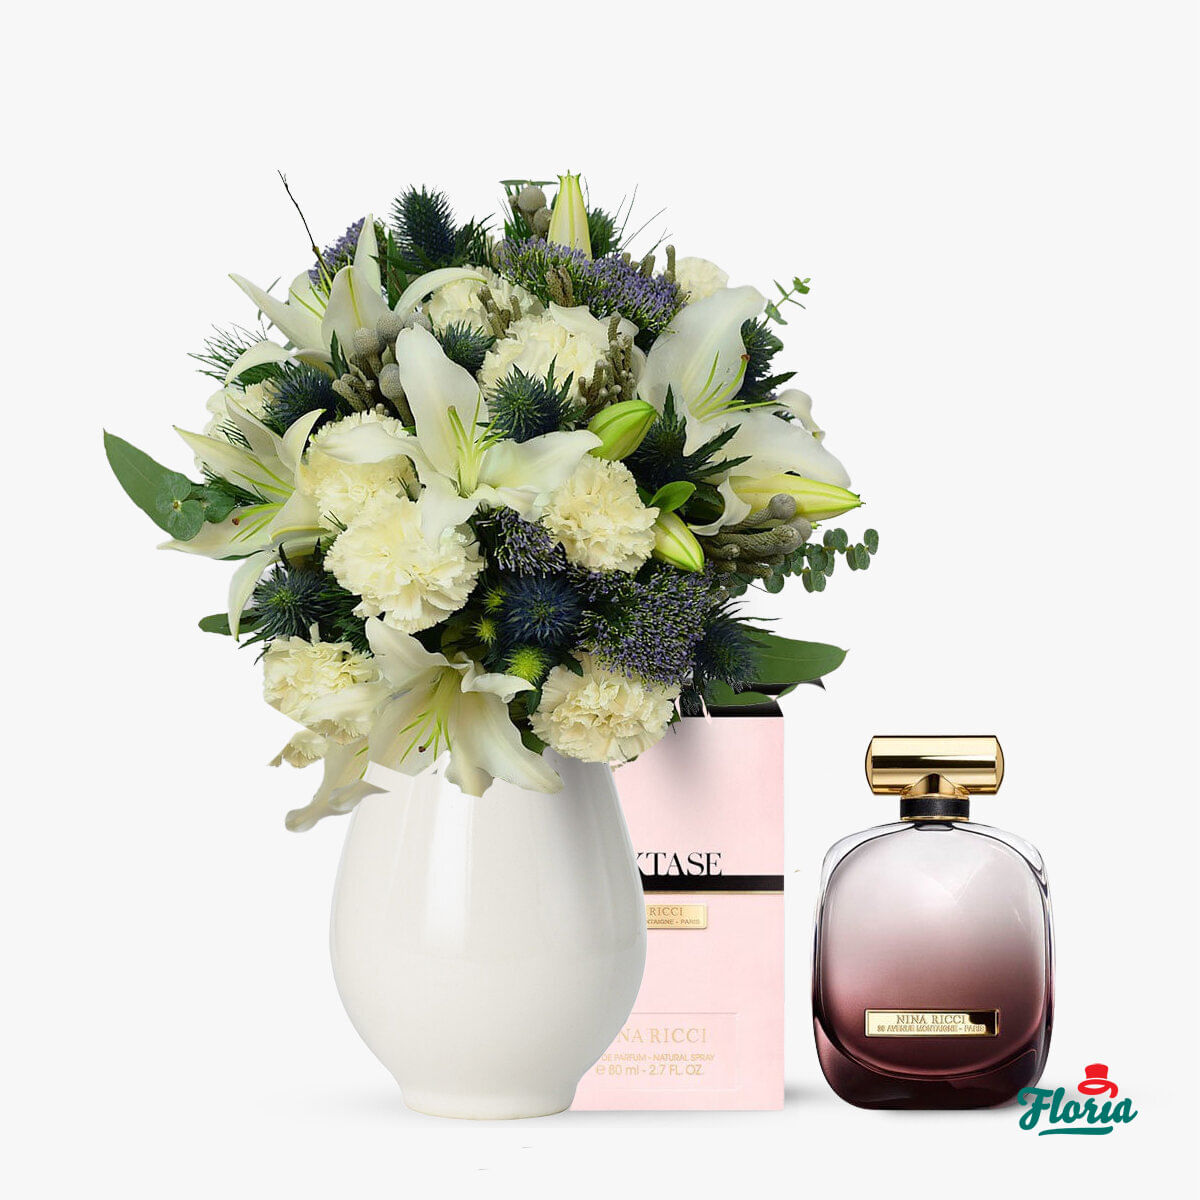 O noapte speciala si parfum – Standard Floria imagine 2022